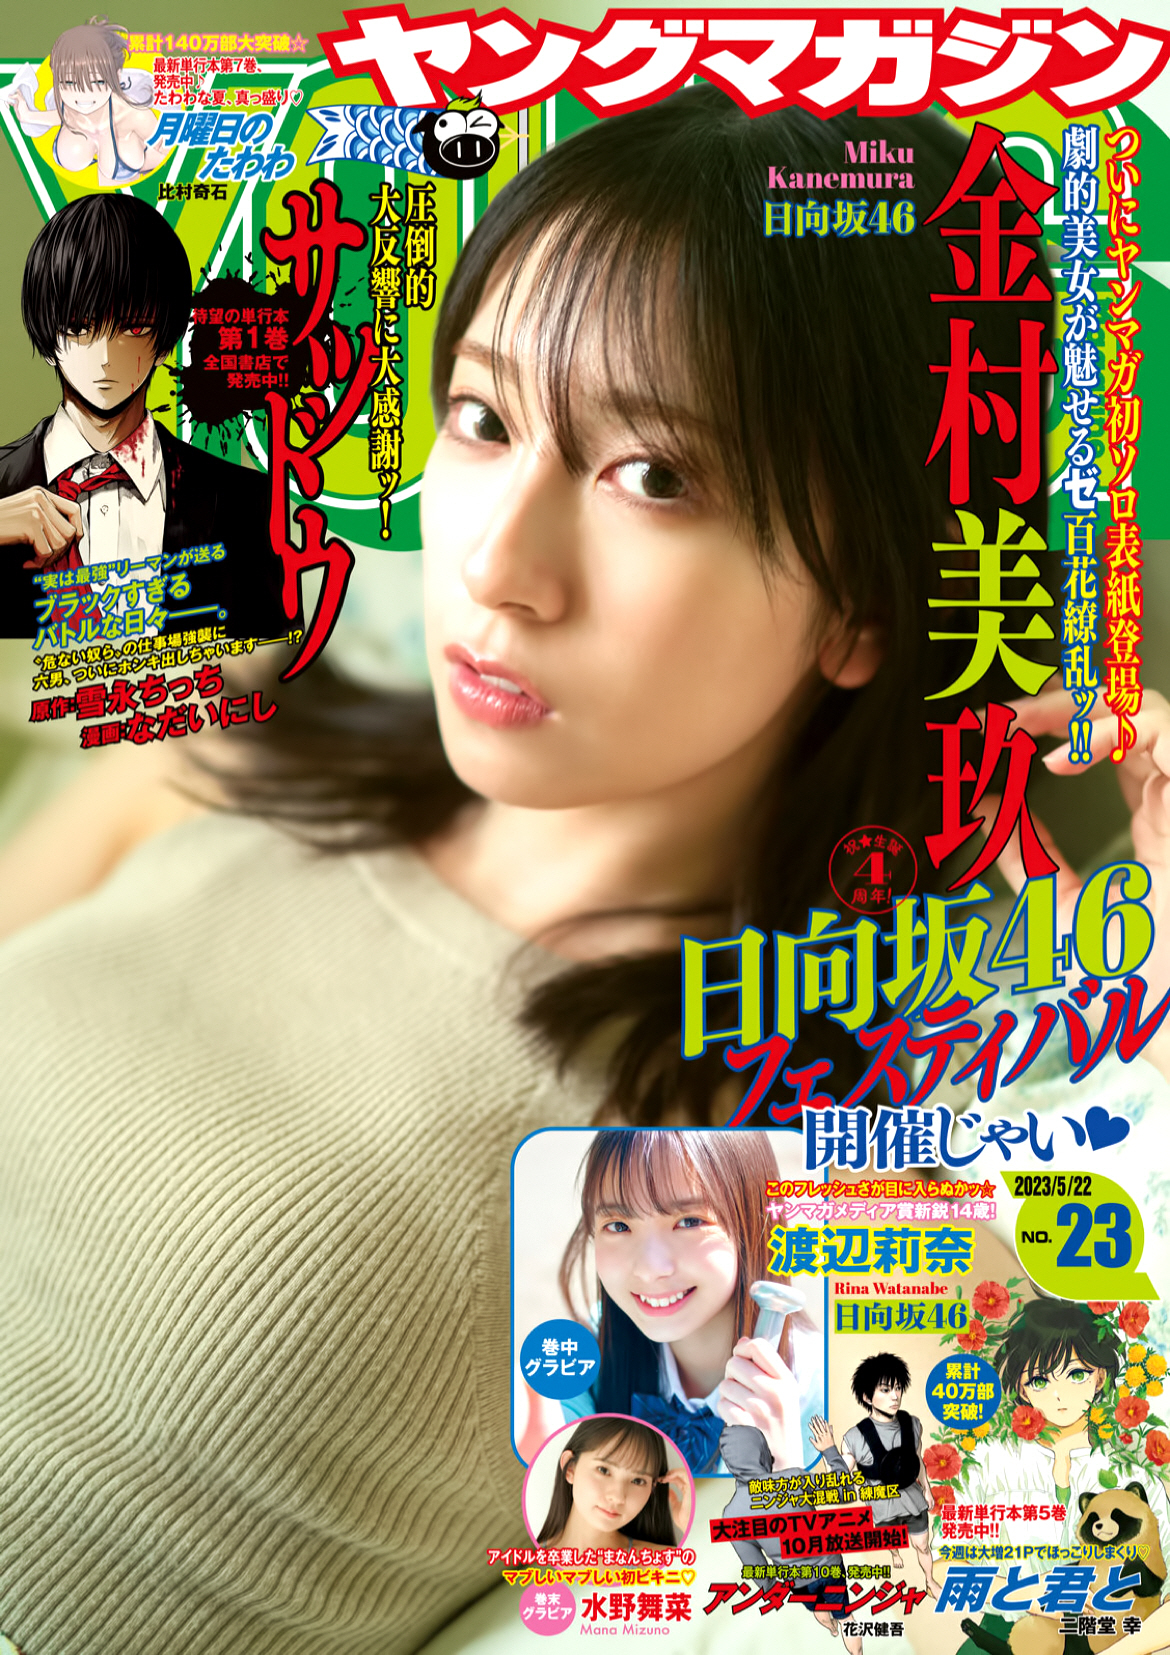 Hinatazaka 46 Kanemura Miku Weekly Young Magazine